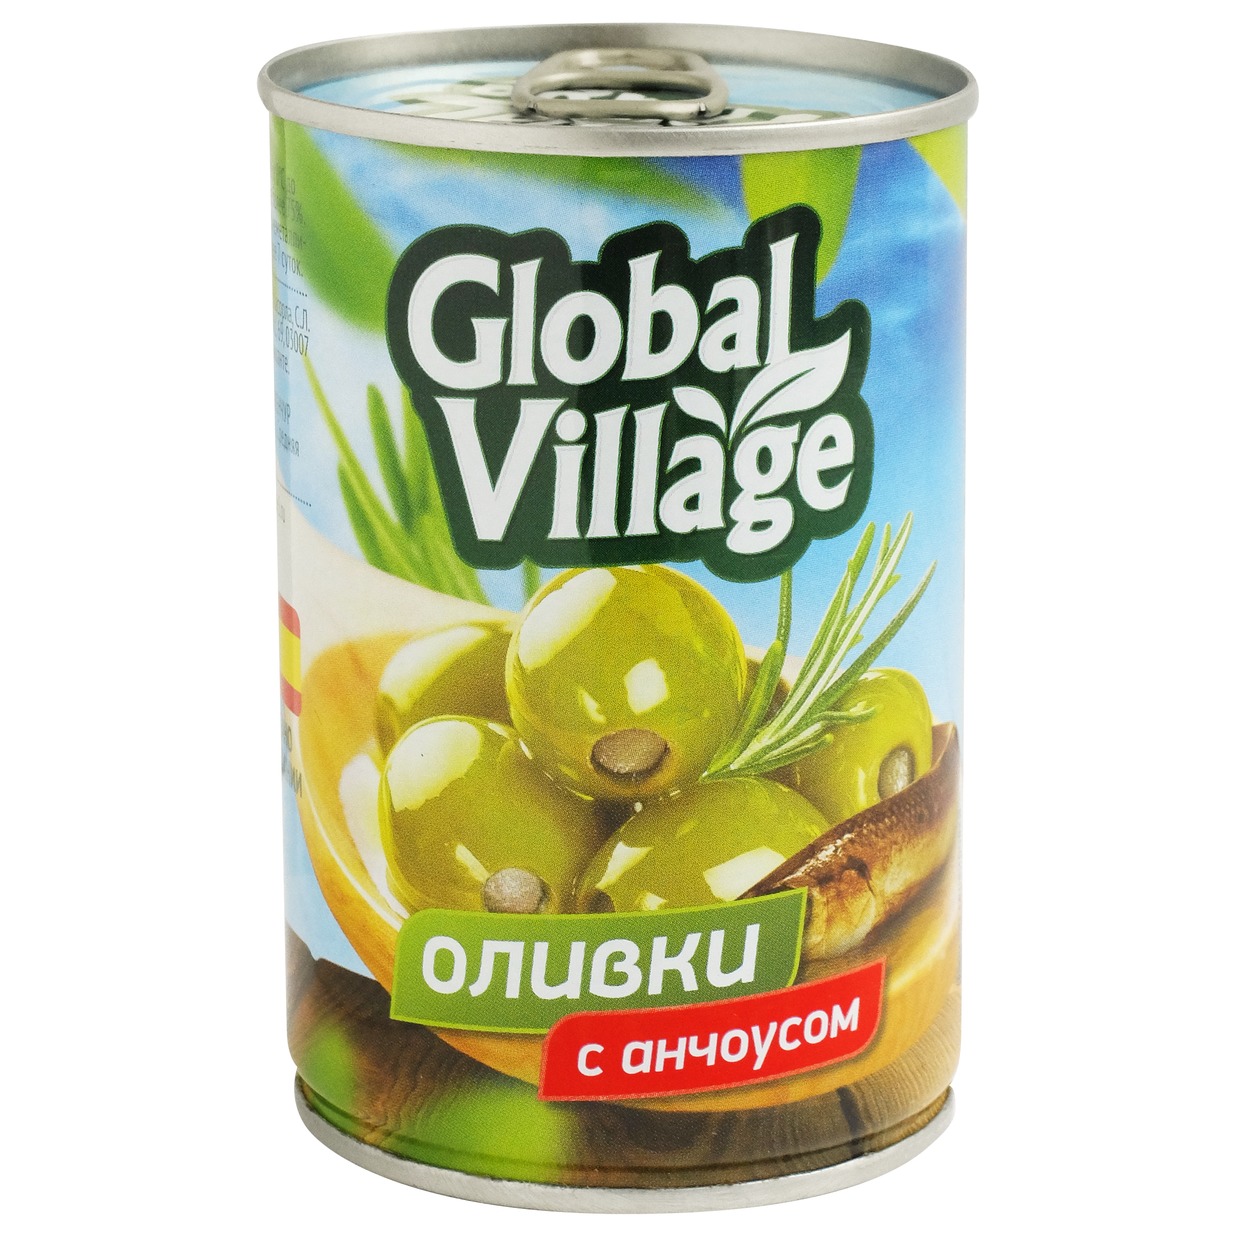 Оливки Global Village с анчоусом 120 г по акции в Пятерочке